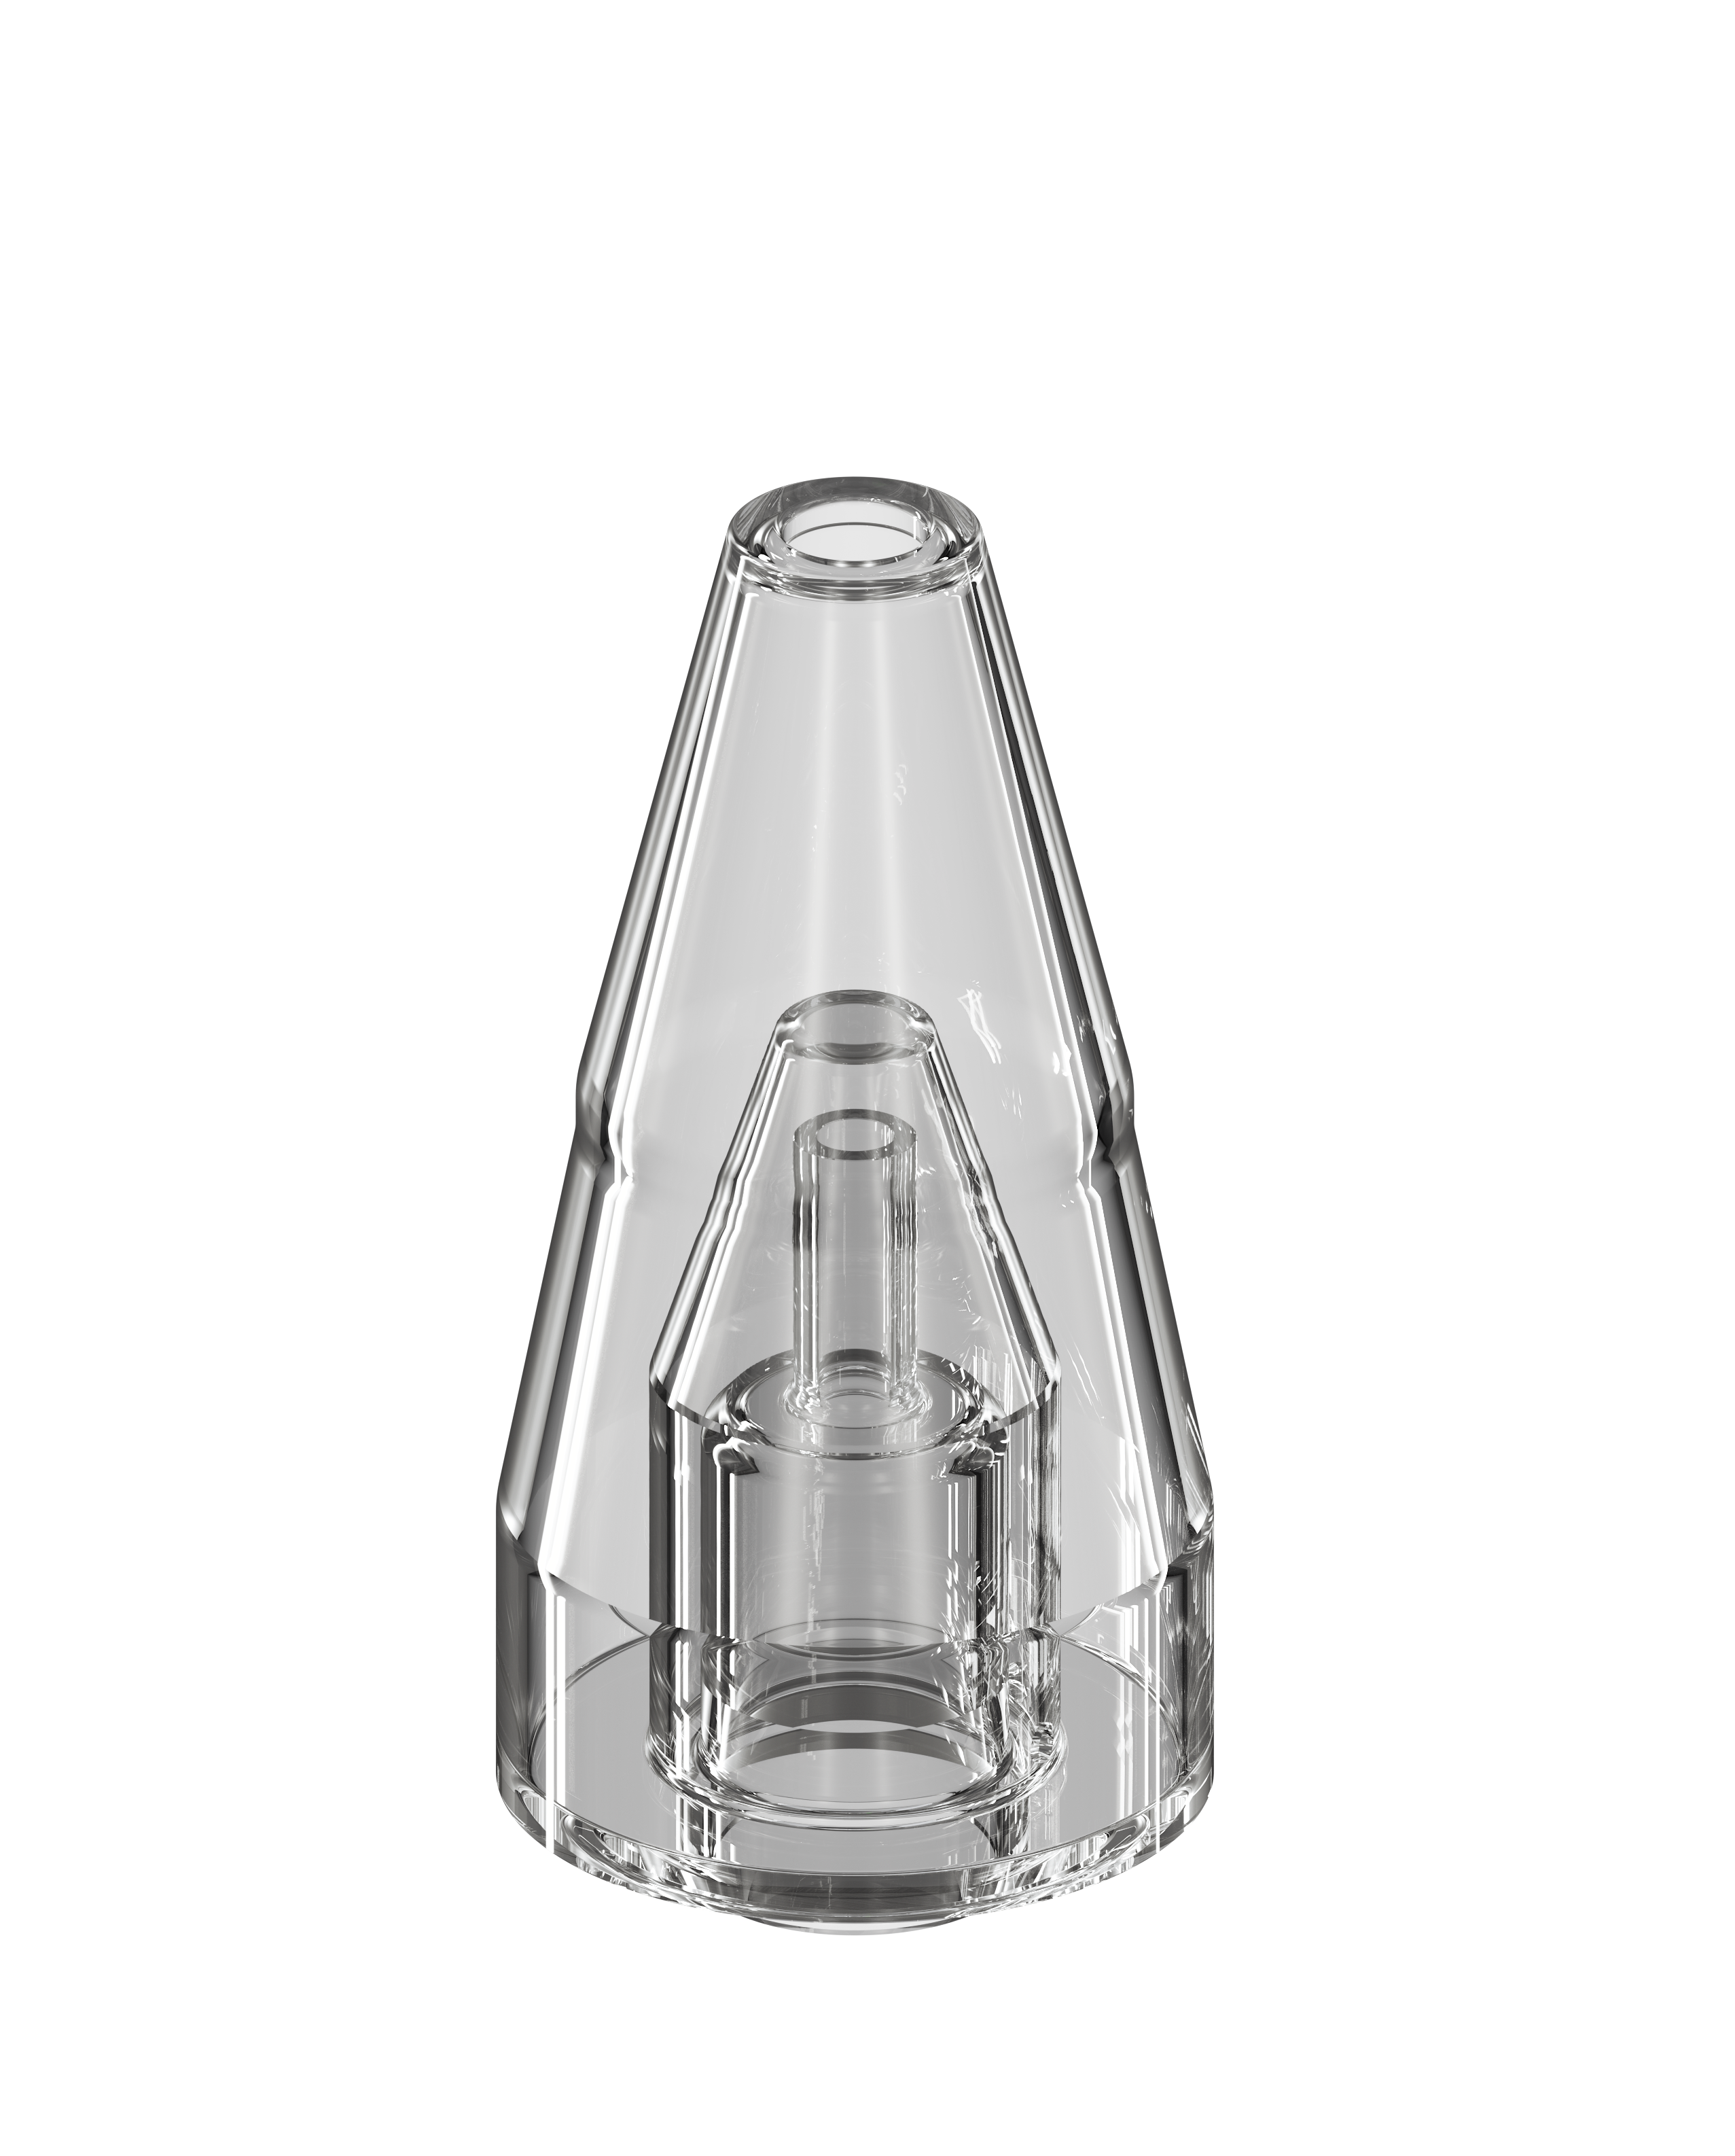 dabX GO Replacement Glass Upper Vaporizers : Portable Parts DabX   